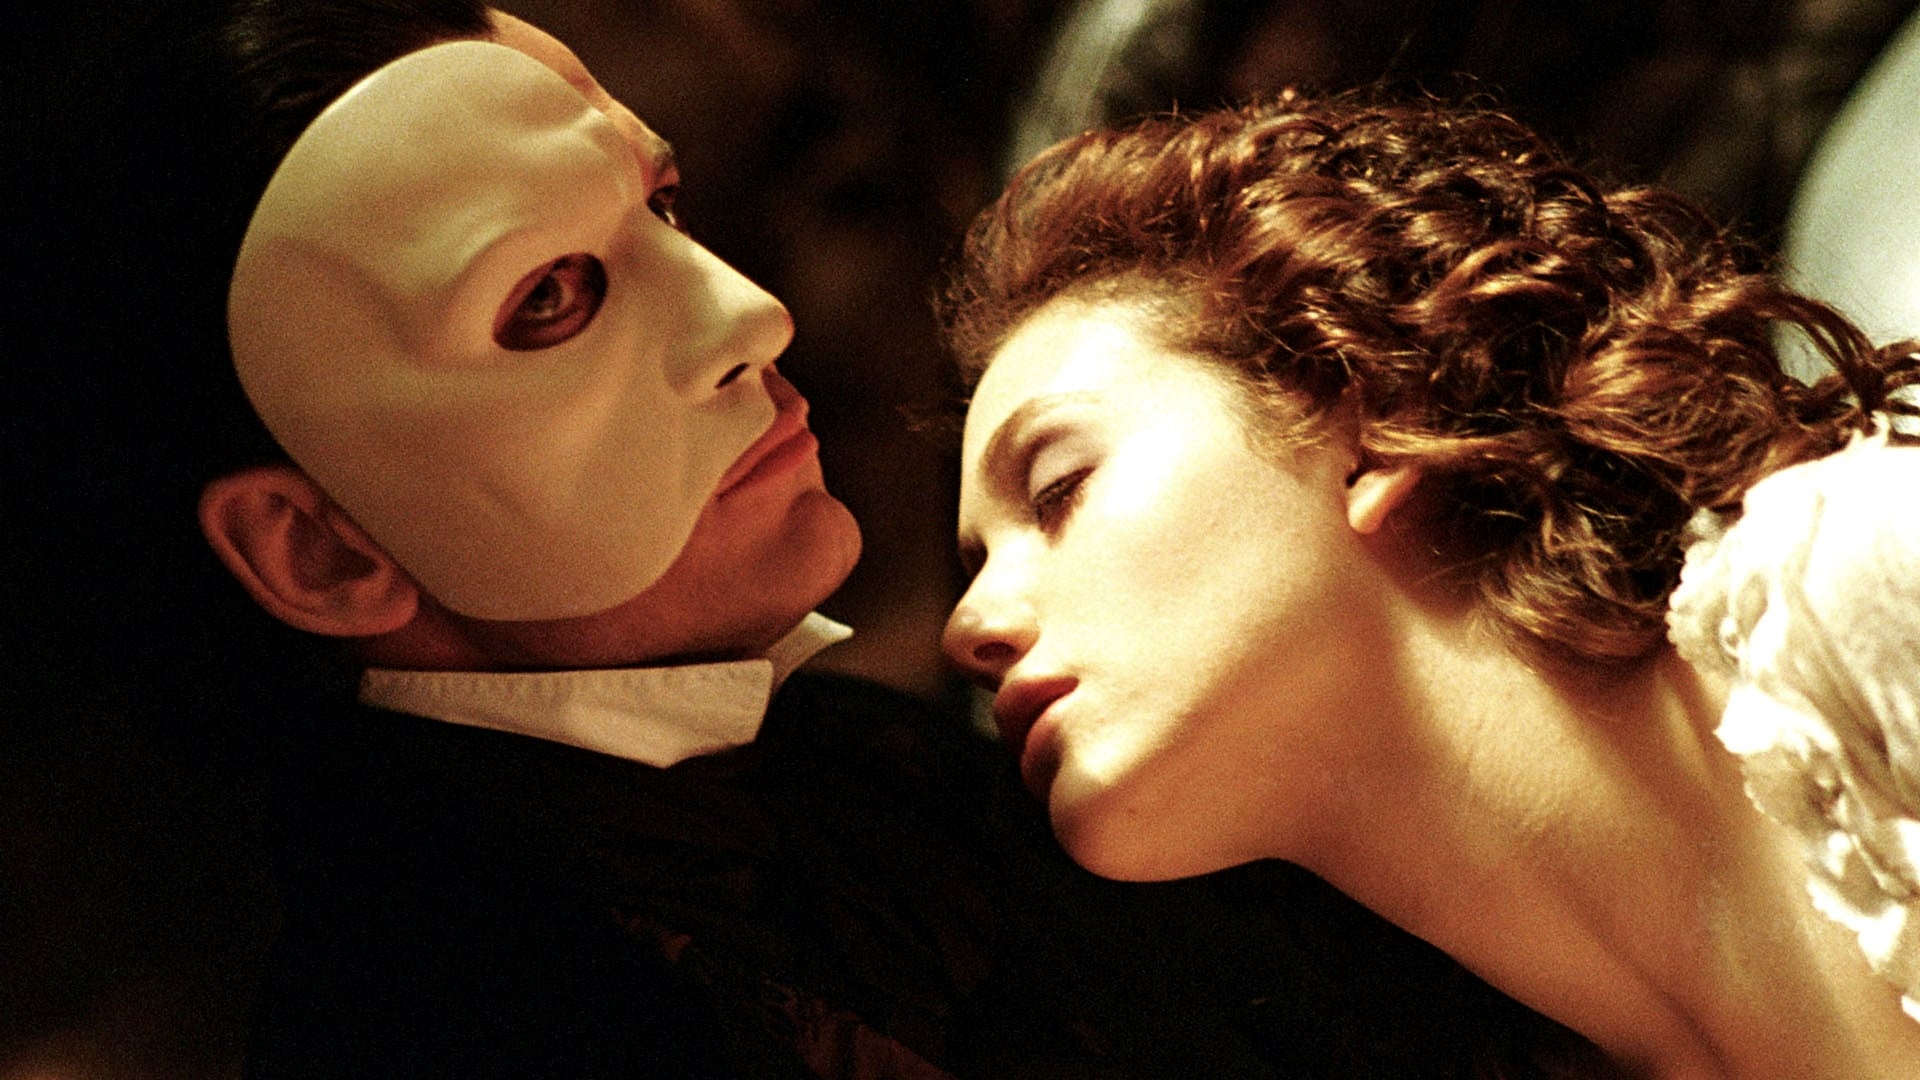 دانلود فیلم The Phantom of the Opera 2004